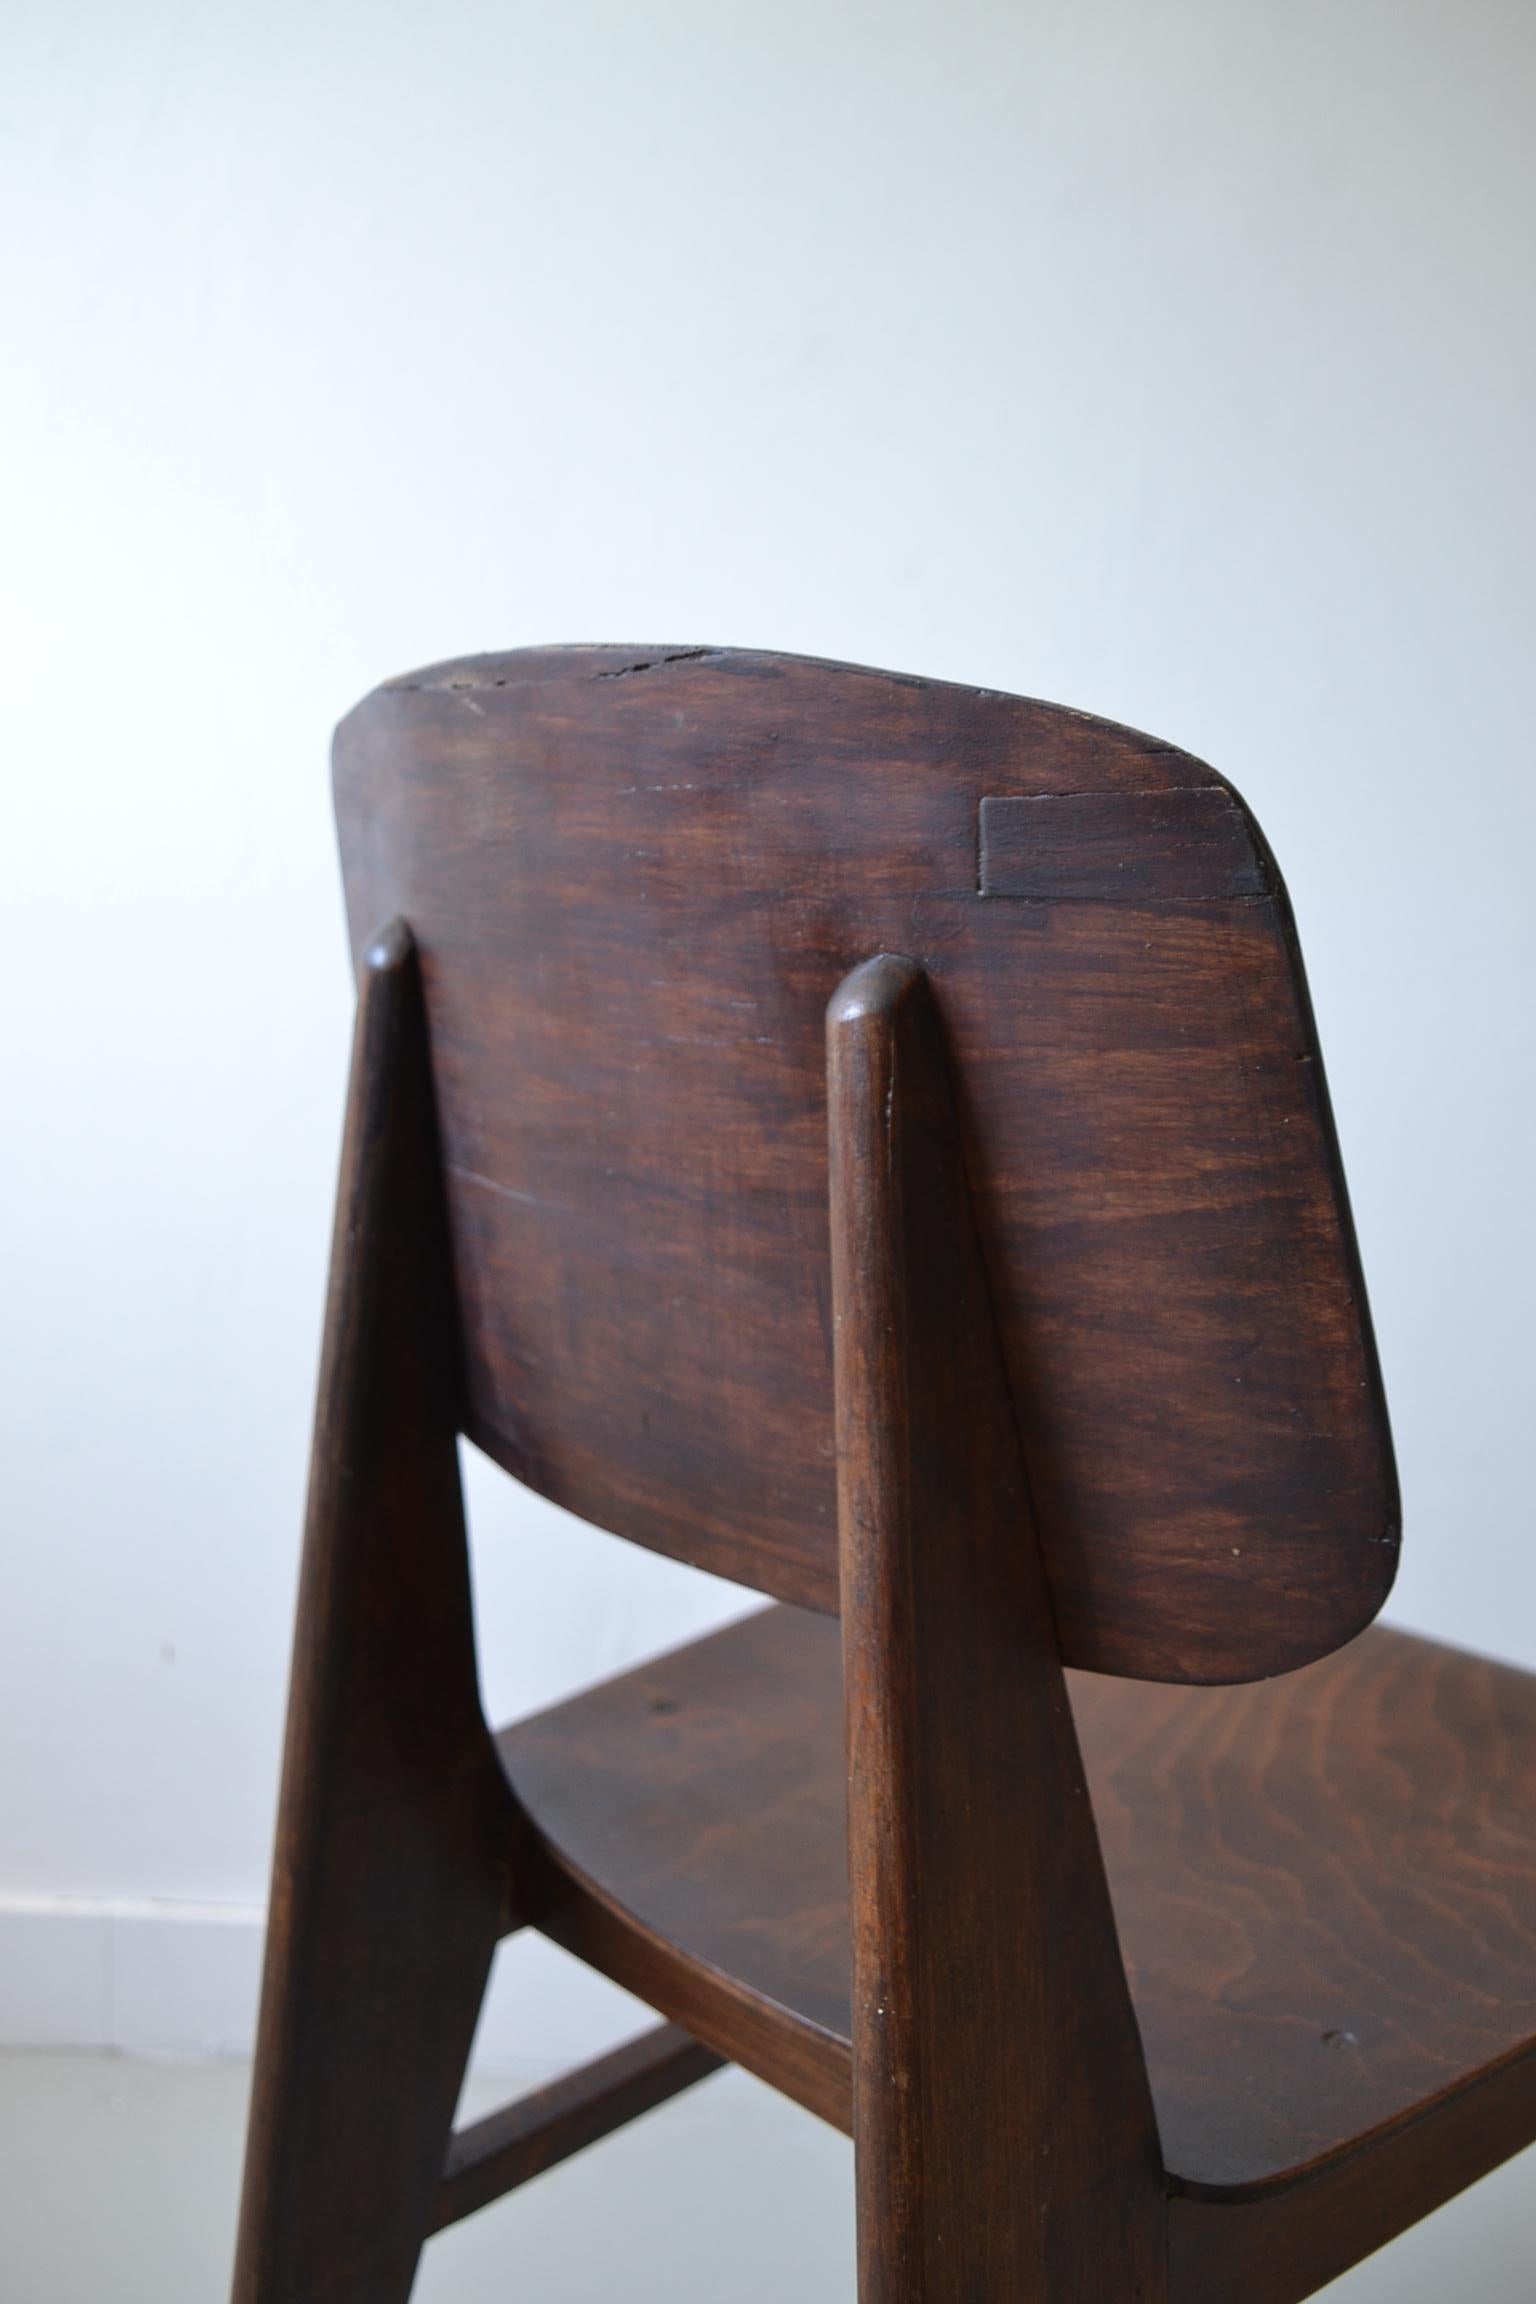 Plywood Jean Prouvé, Tout Bois Chair, 1941